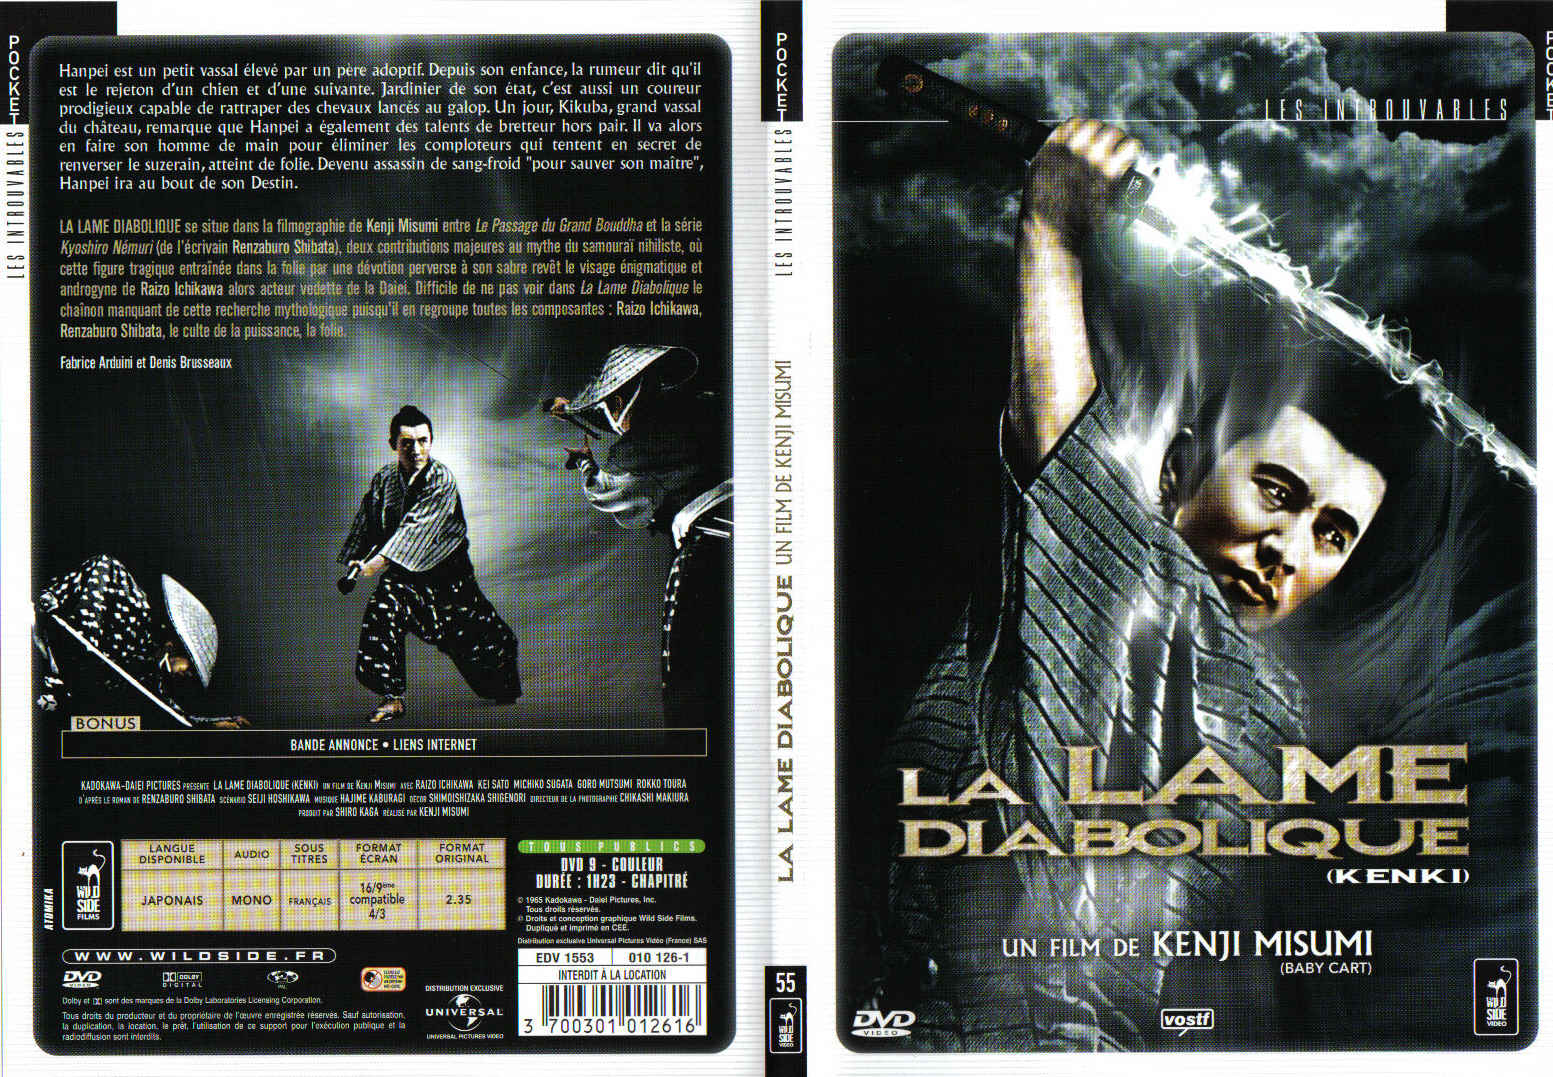 Jaquette DVD La lame diabolique